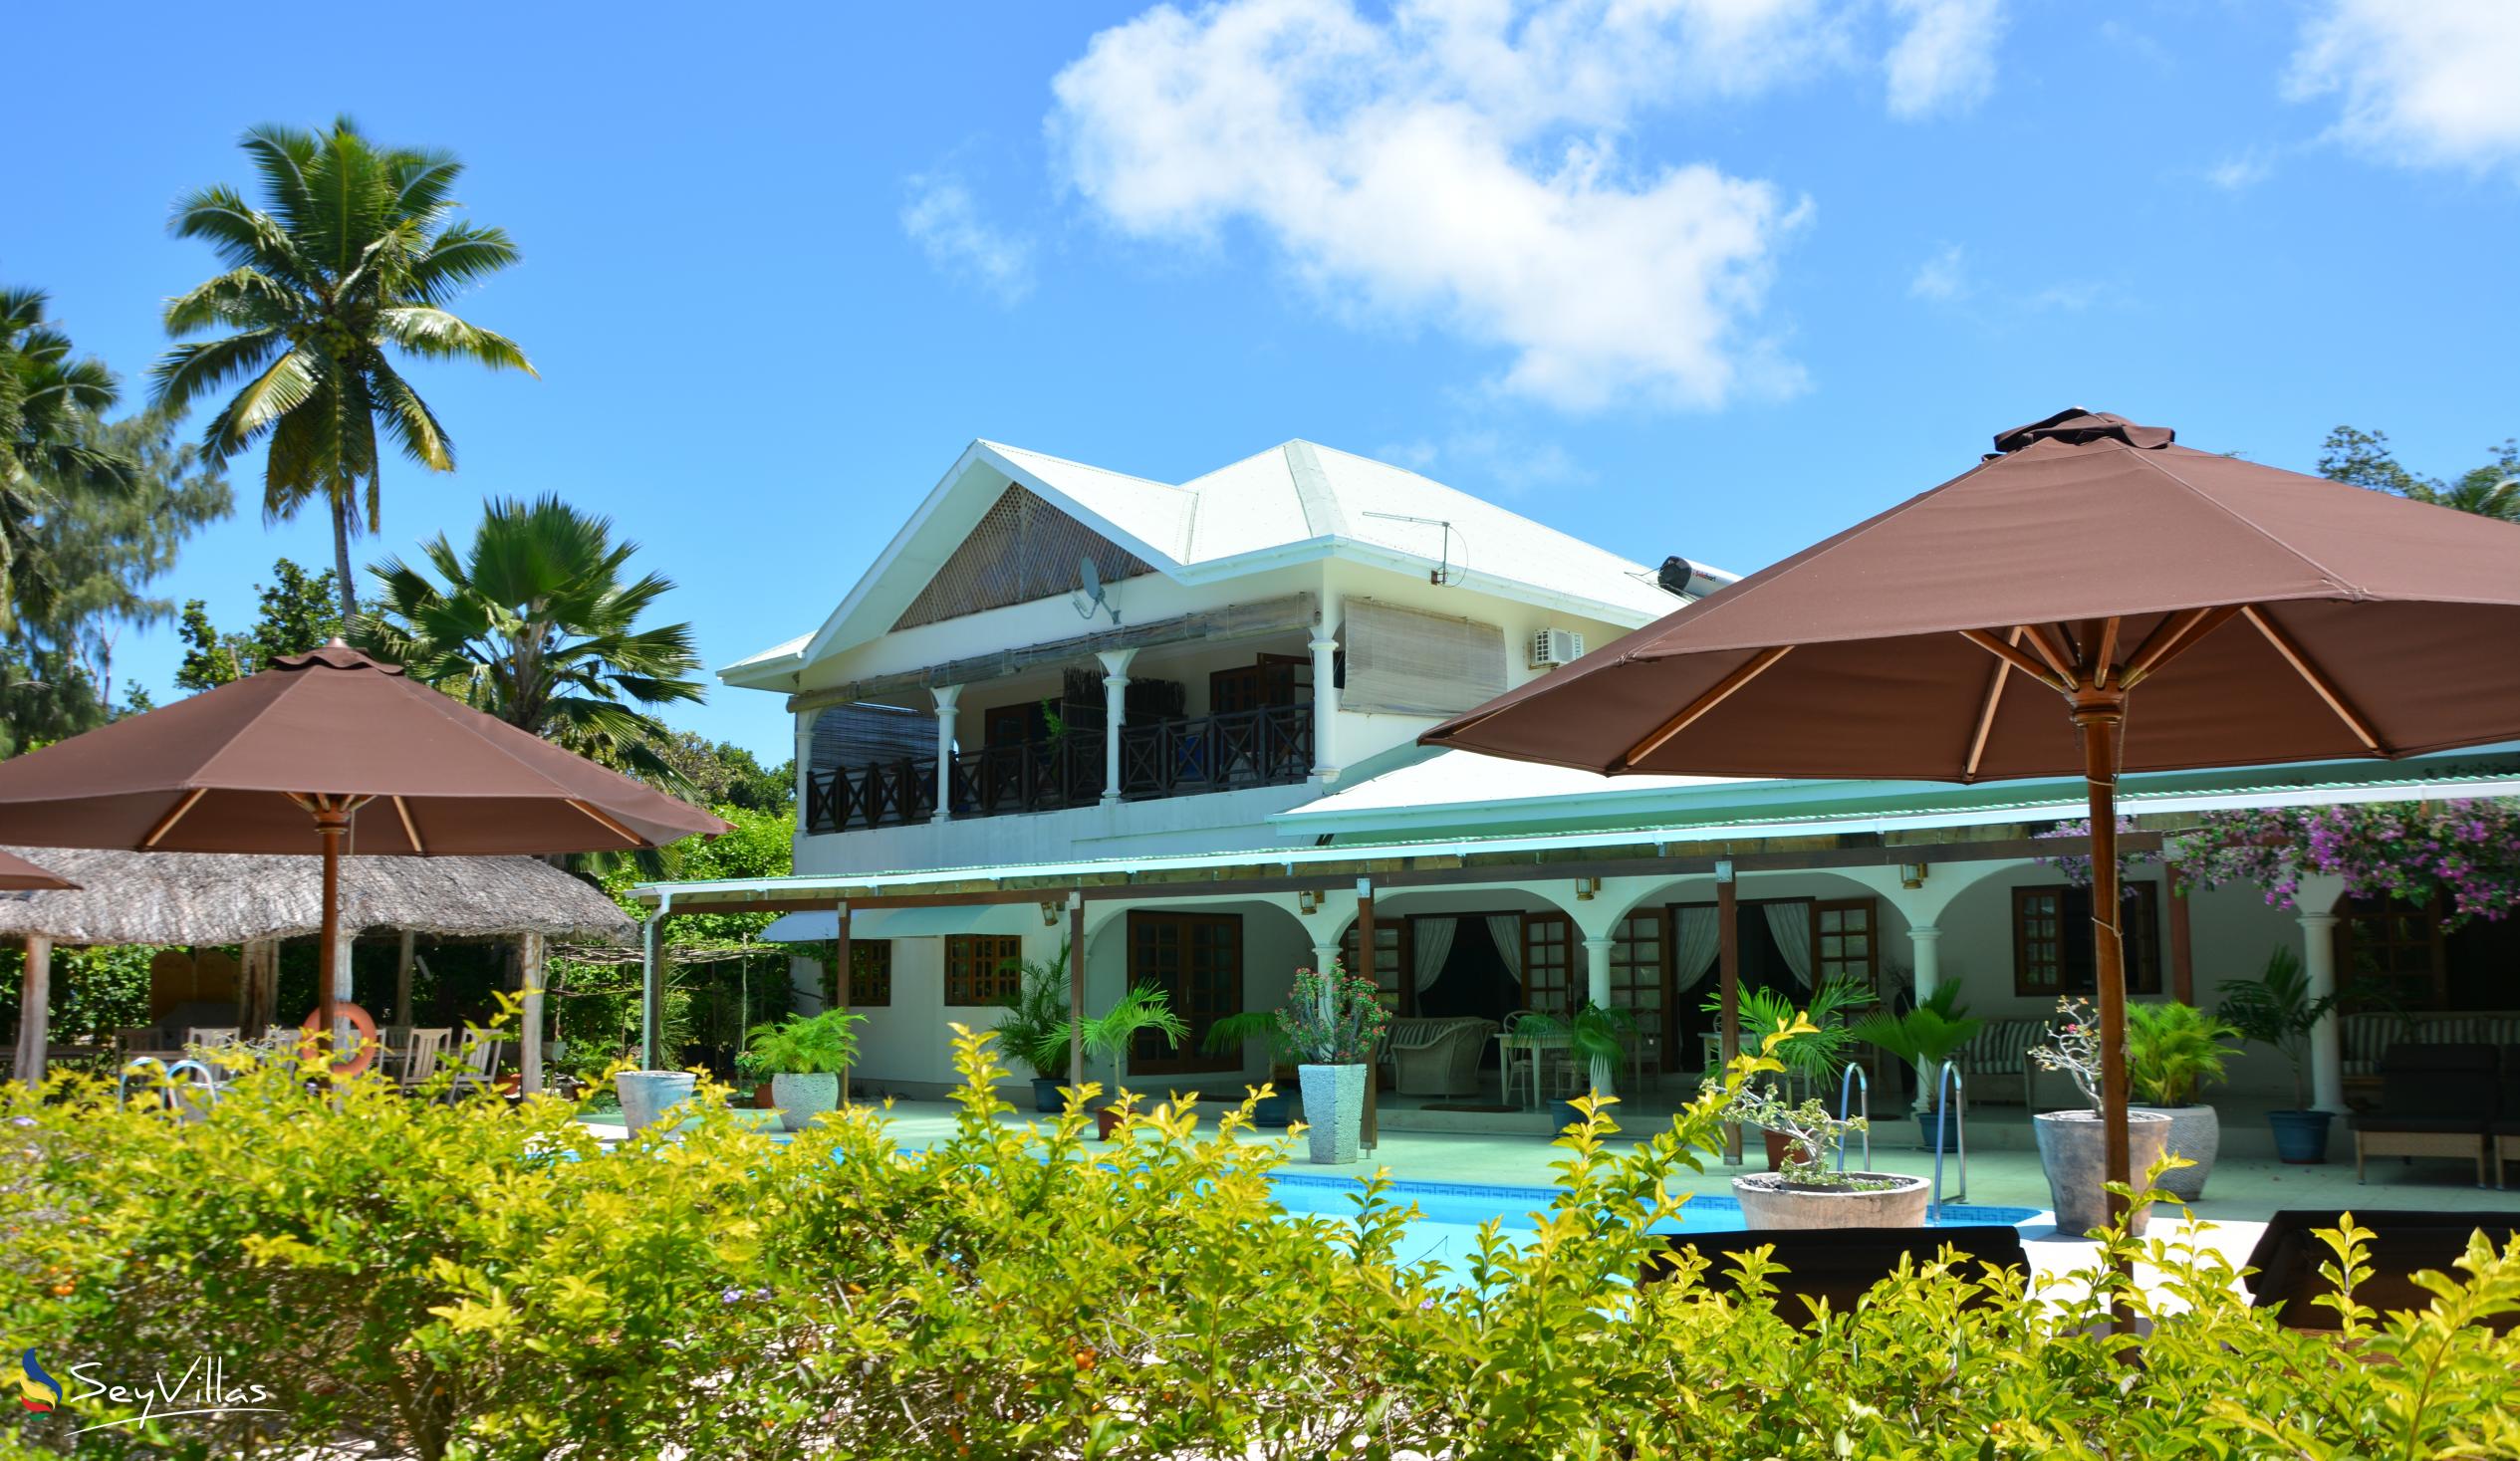 Foto 2: Villa de Cerf - Aussenbereich - Cerf Island (Seychellen)